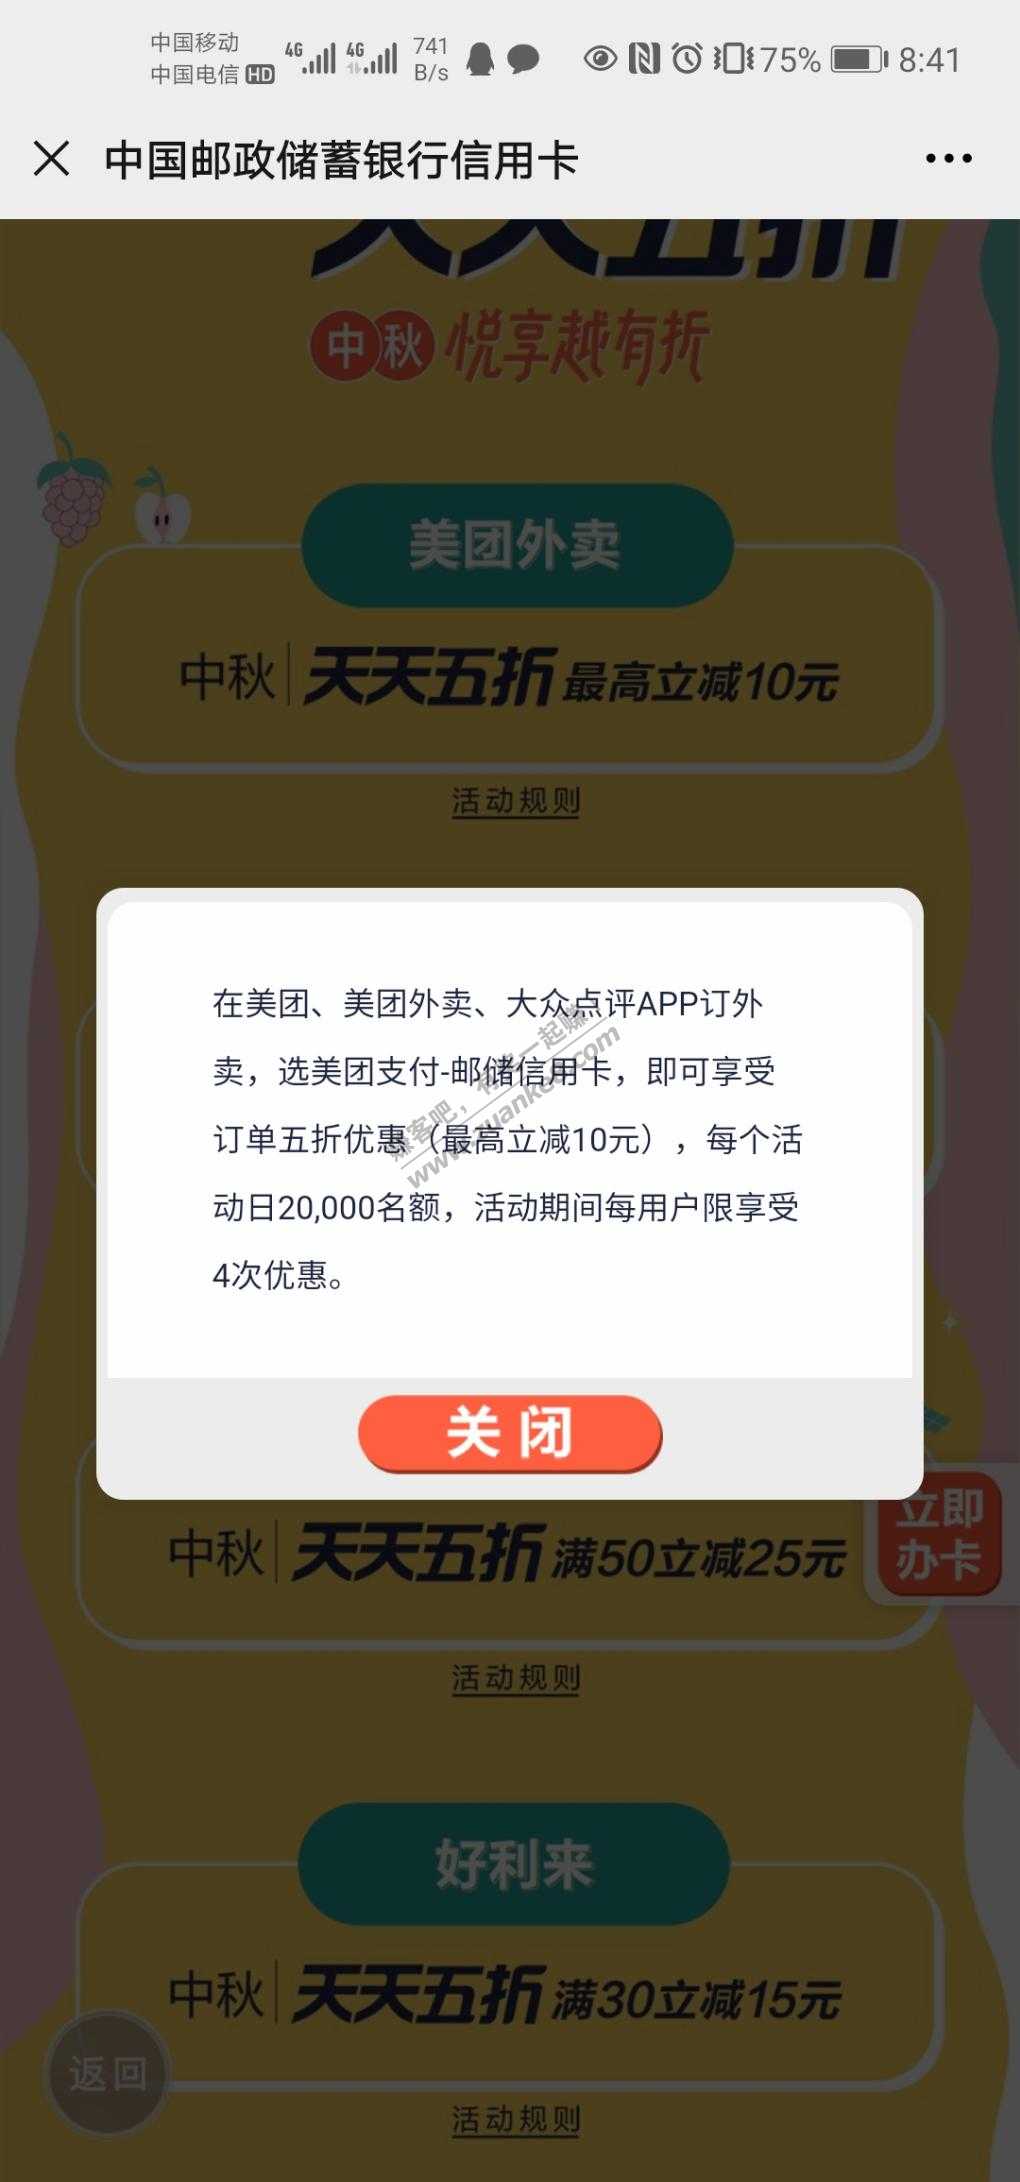 邮储信用卡919活动预告-惠小助(52huixz.com)